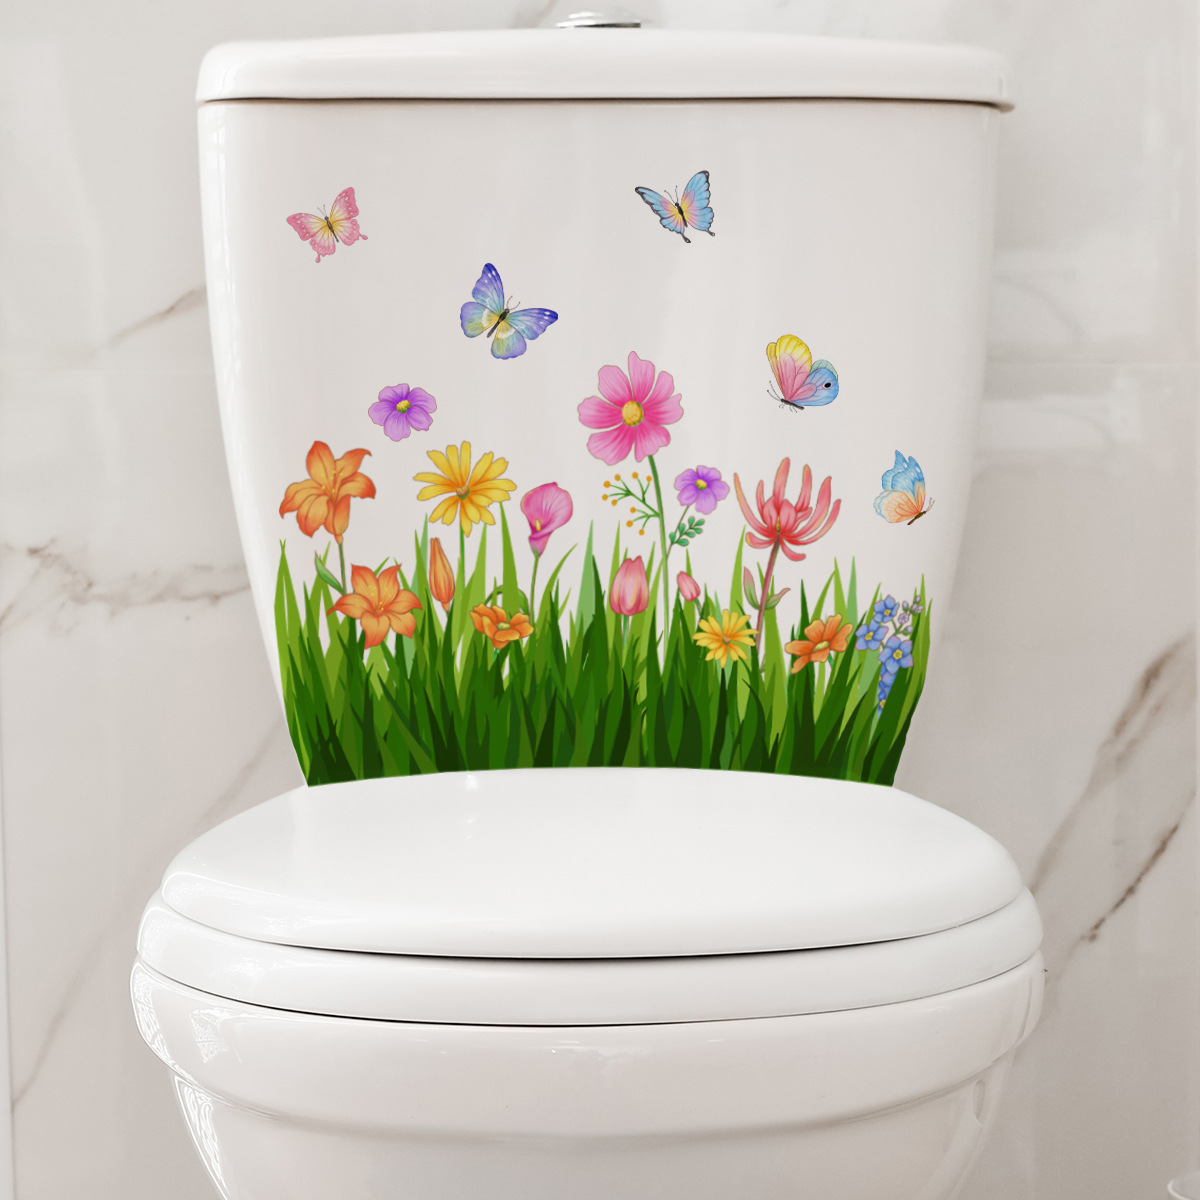 M21 plantes fleurs papillons autocollants de toilette de salle de bain couvercle de toilette autocollant réfrigérateur mural autocollants wc pour décoration domestique